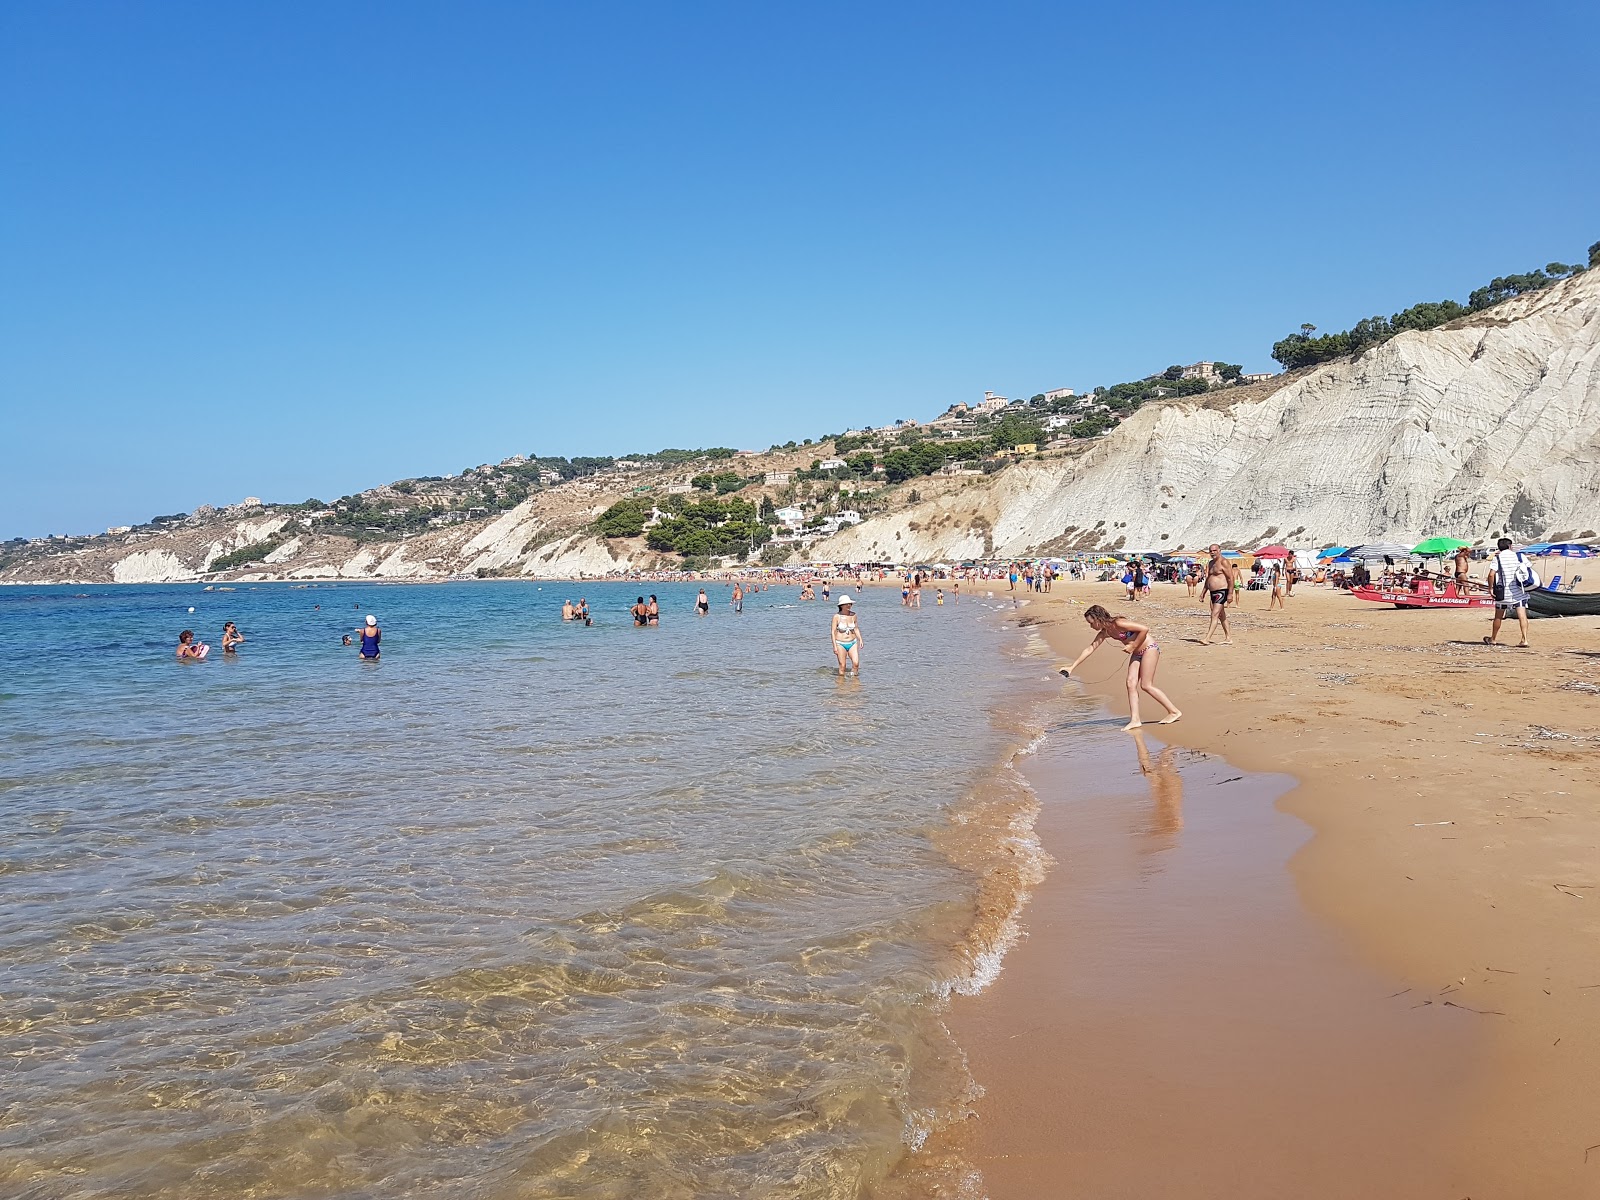 Marianello beach'in fotoğrafı parlak kum yüzey ile